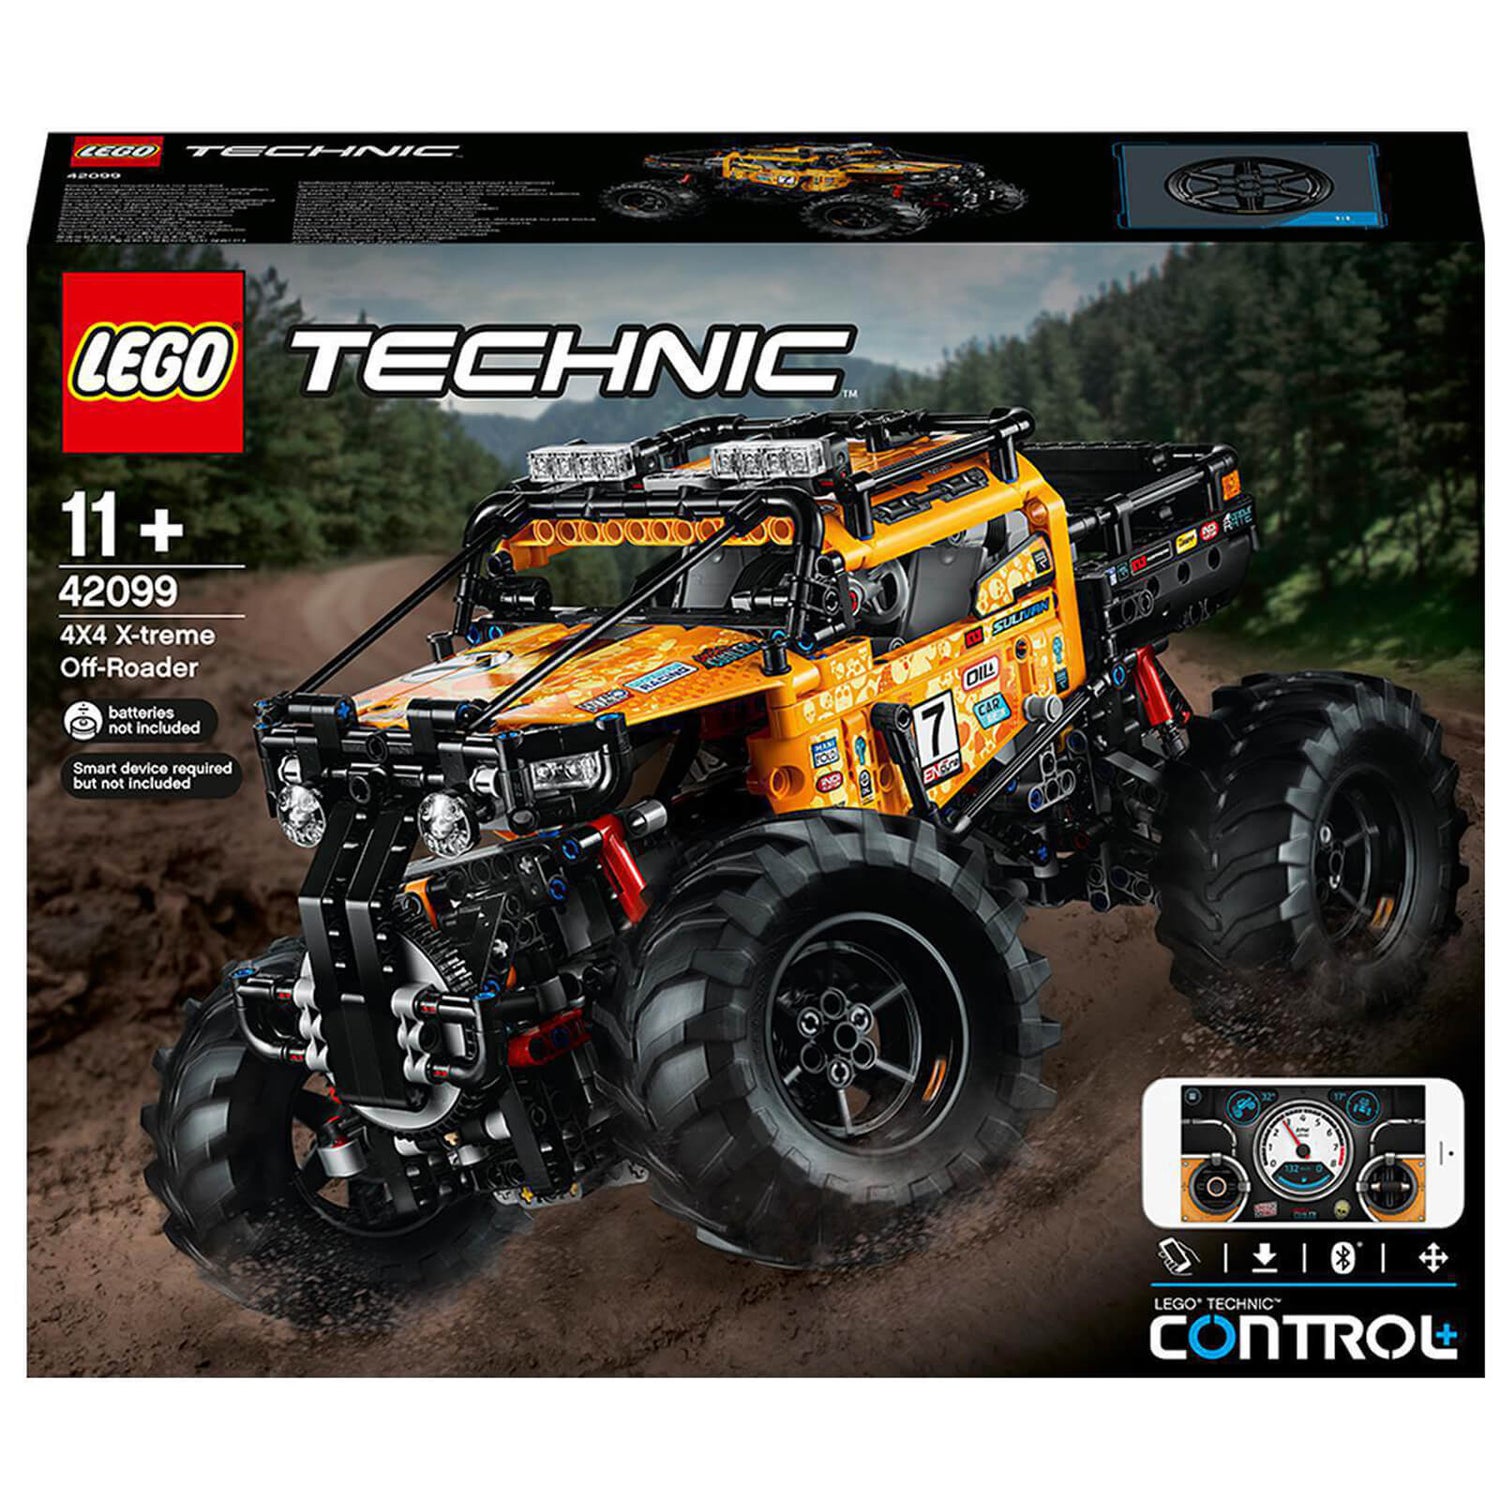 LEGO Technic: Allrad Xtreme-Geländewagen (42099)